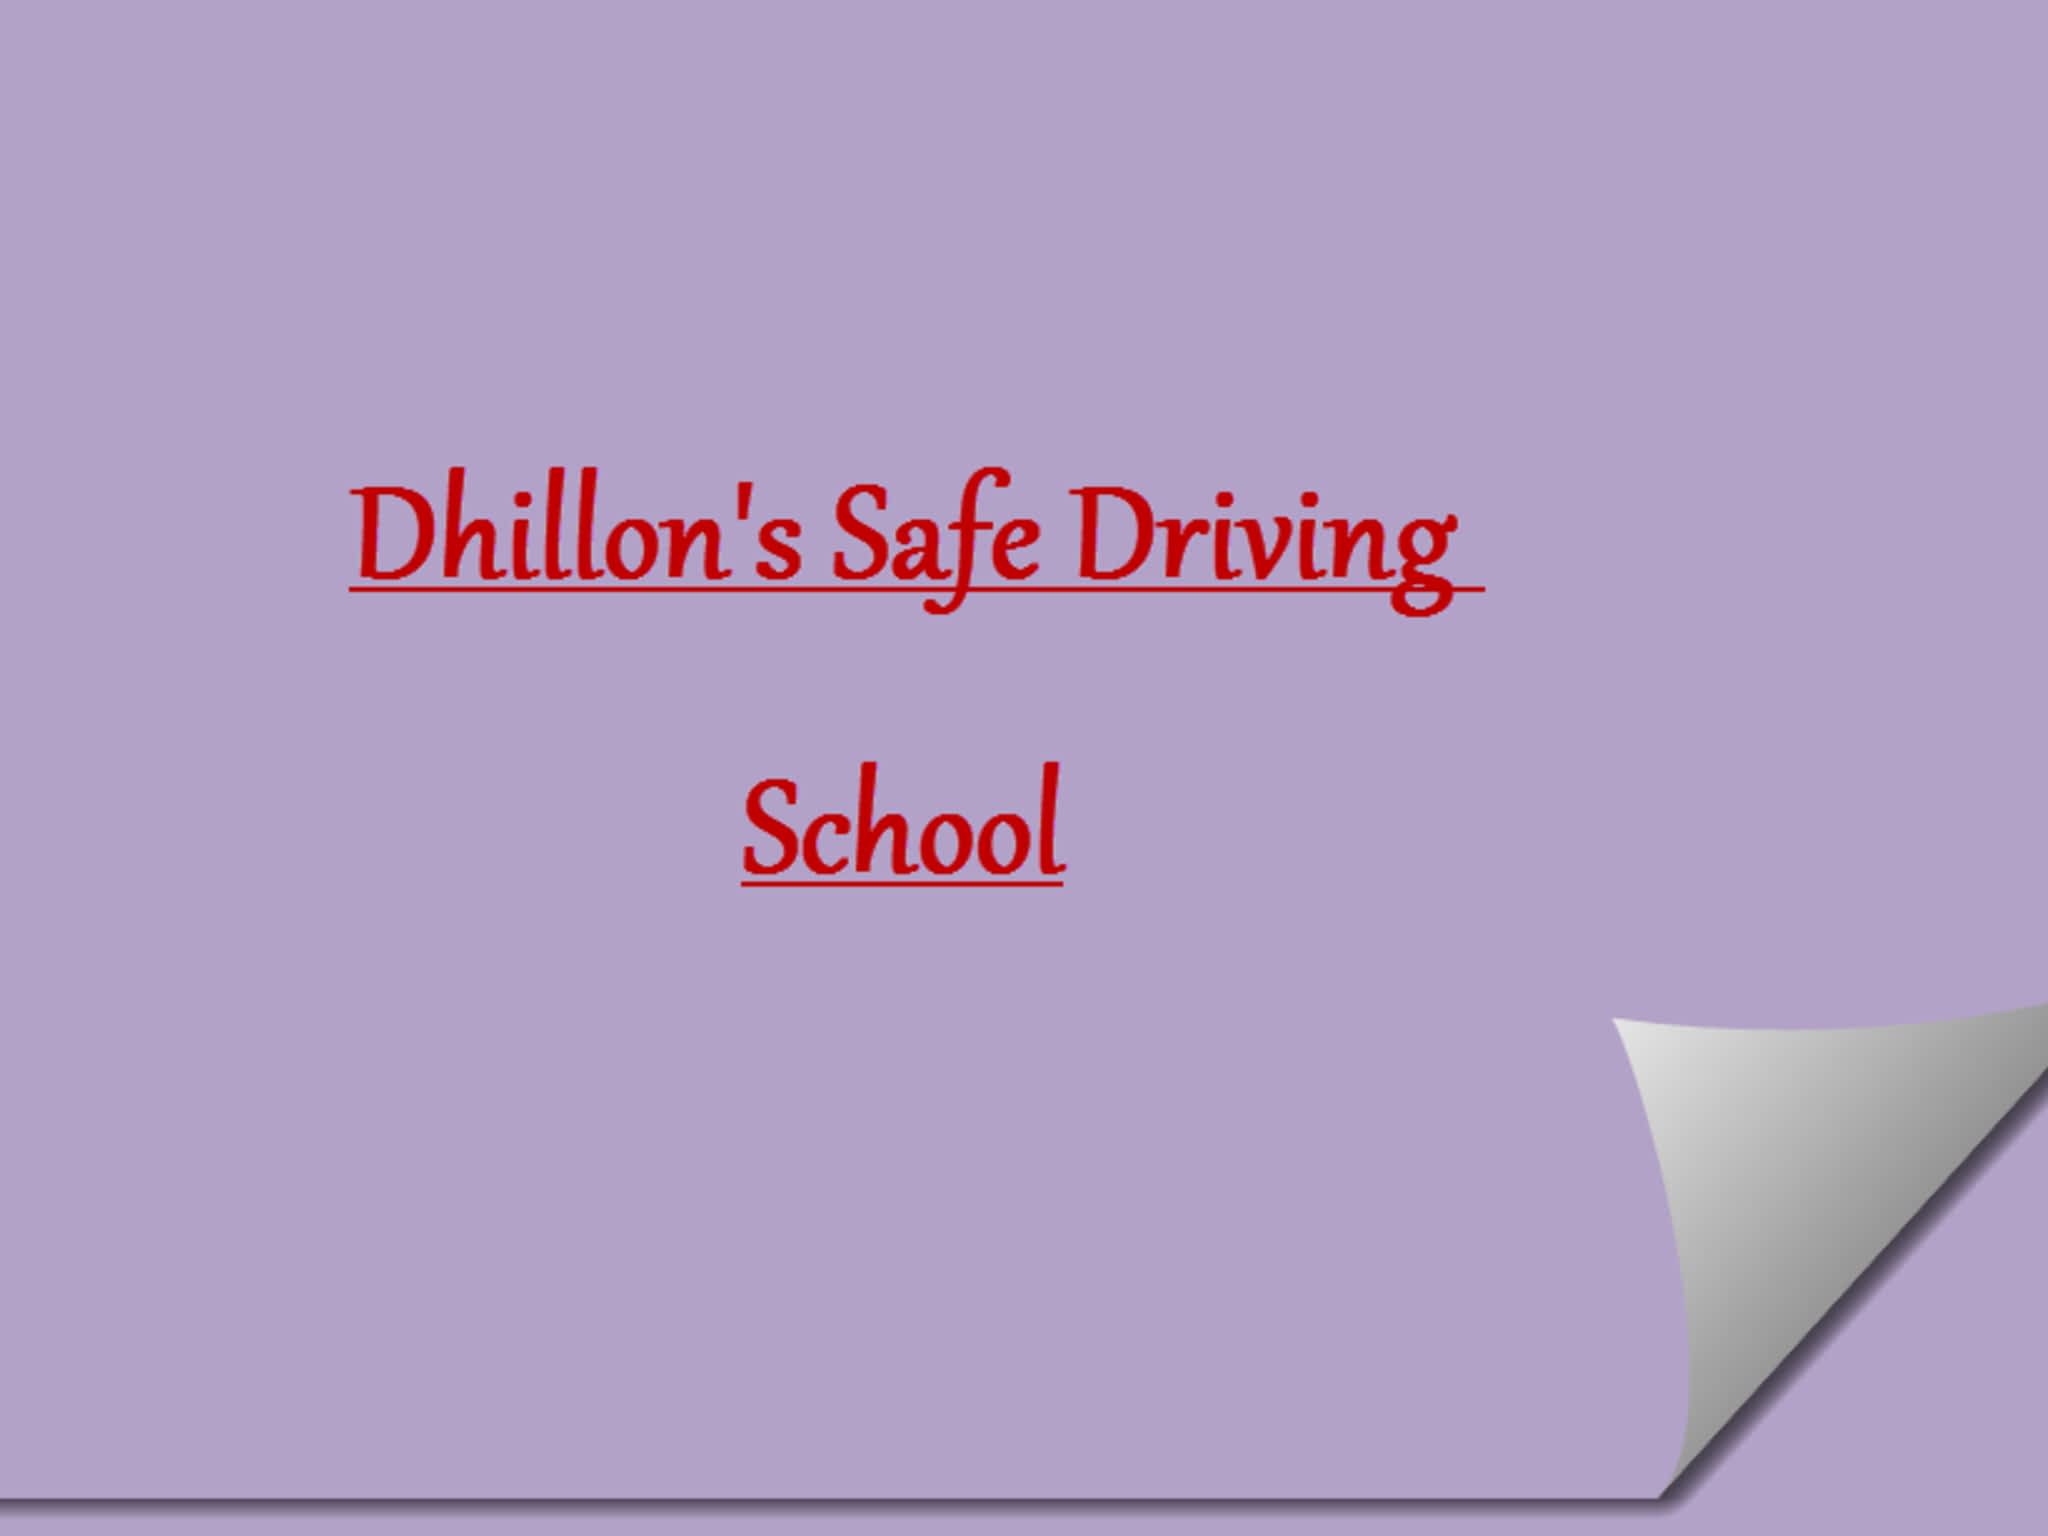 photo Dhillon's Safe Driving School